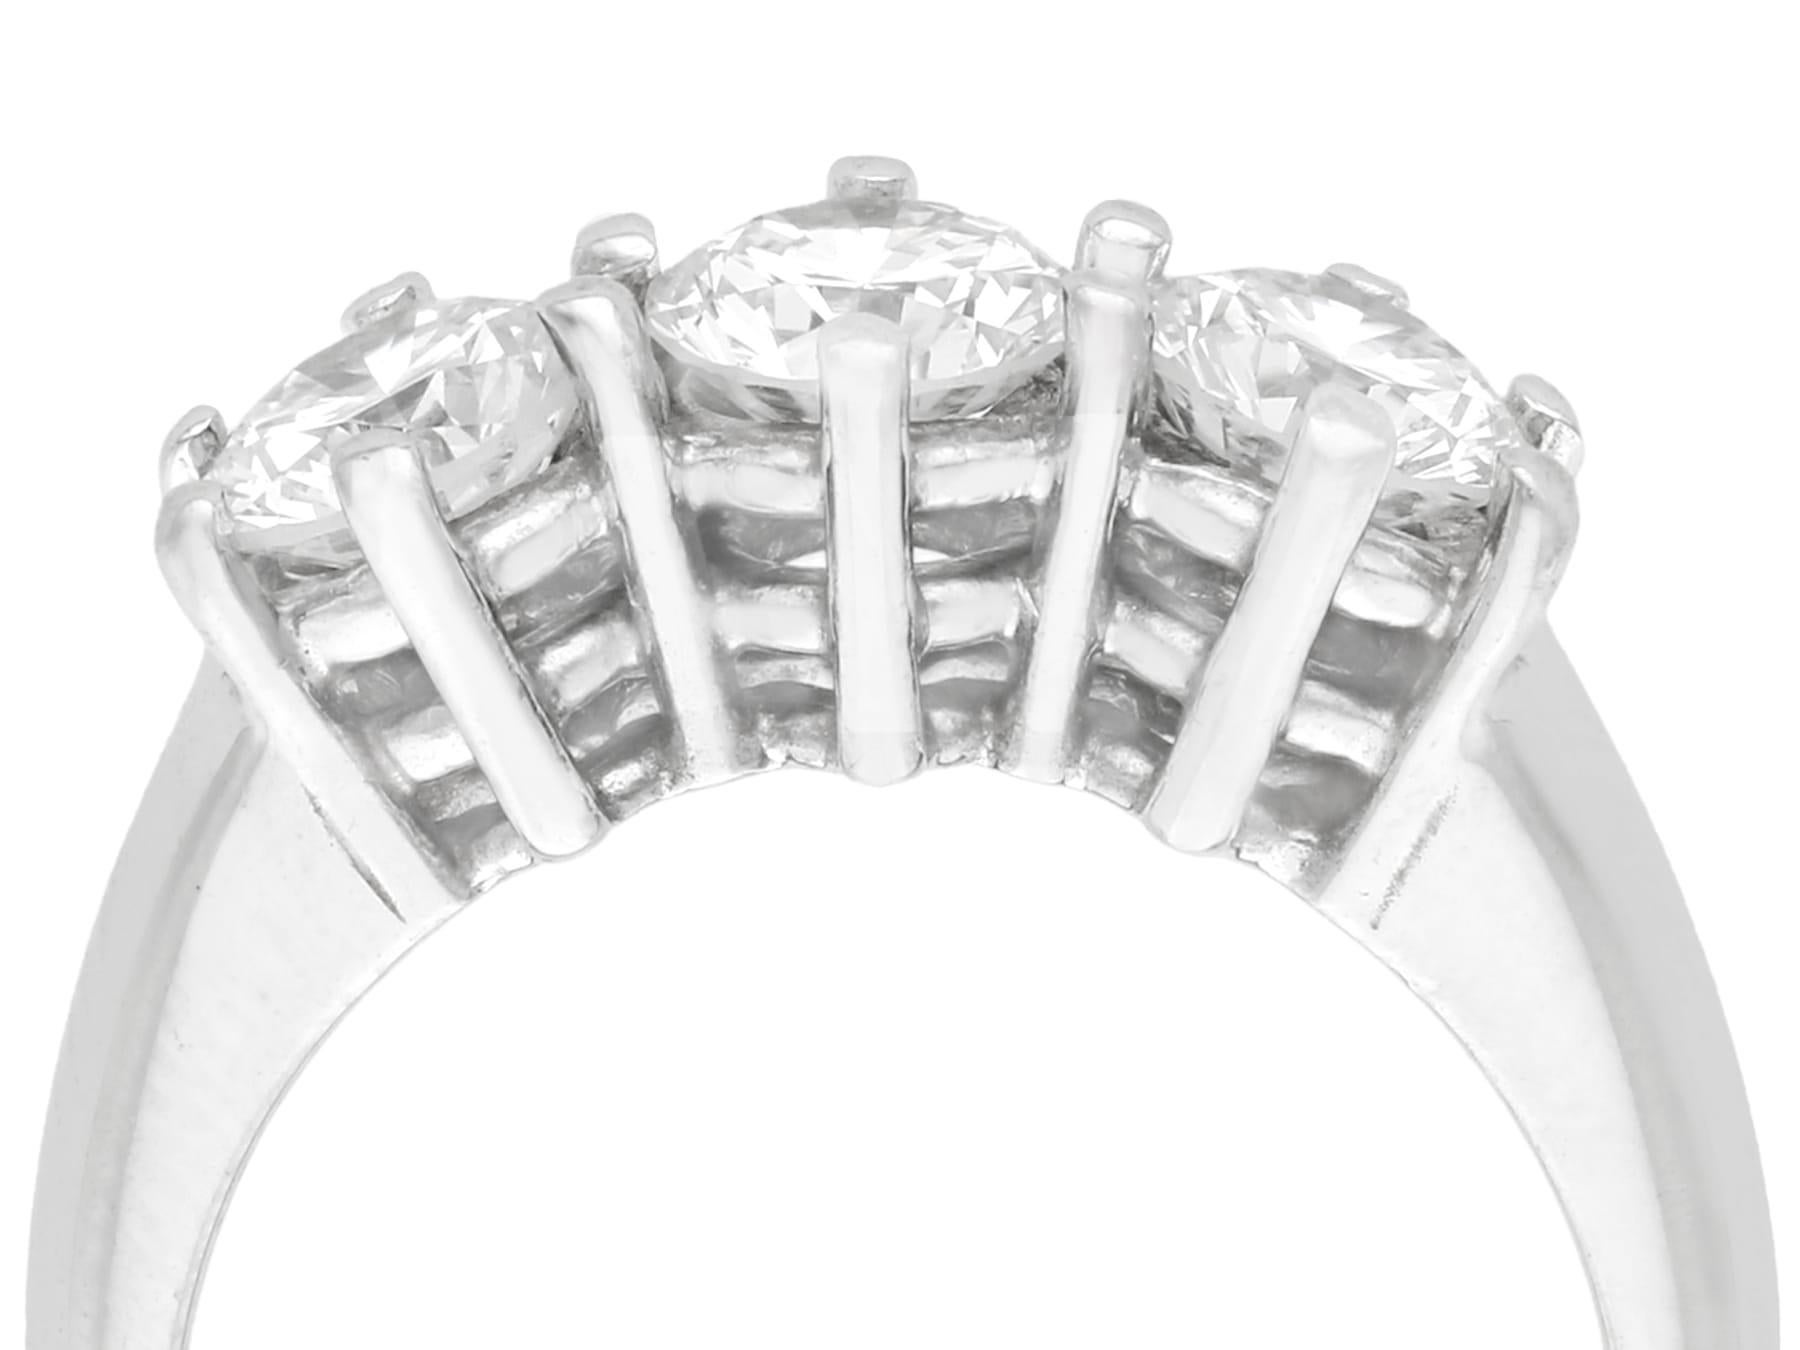 Eine feine und beeindruckende 1,18 Karat Diamant und 18 Karat Weißgold drei Stein / Trilogie Ring; Teil unserer Vintage-Schmuck und Estate Jewelry Collections.

Dieser feine und beeindruckende Diamant-Trilogie-Ring ist aus 18 Karat Weißgold